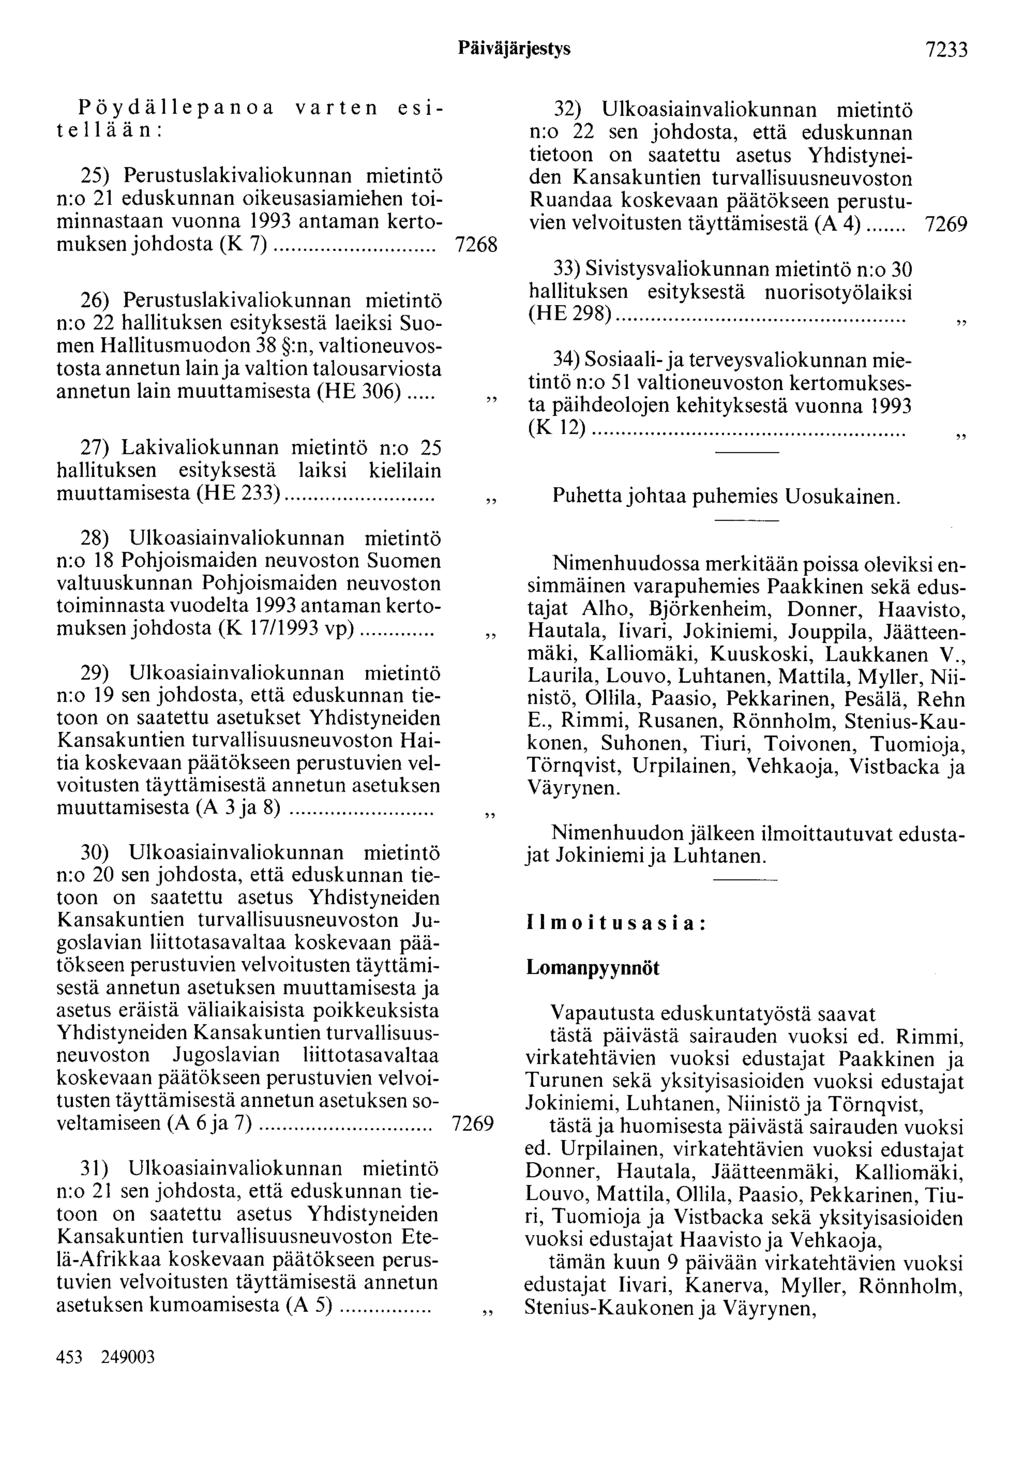 Päiväjärjestys 7233 Pöydällepanoa varten esitellään: 25) Perustuslakivaliokunnan mietintö n:o 21 eduskunnan oikeusasiamiehen toiminnastaan vuonna 1993 antaman kertomuksen johdosta (K 7).